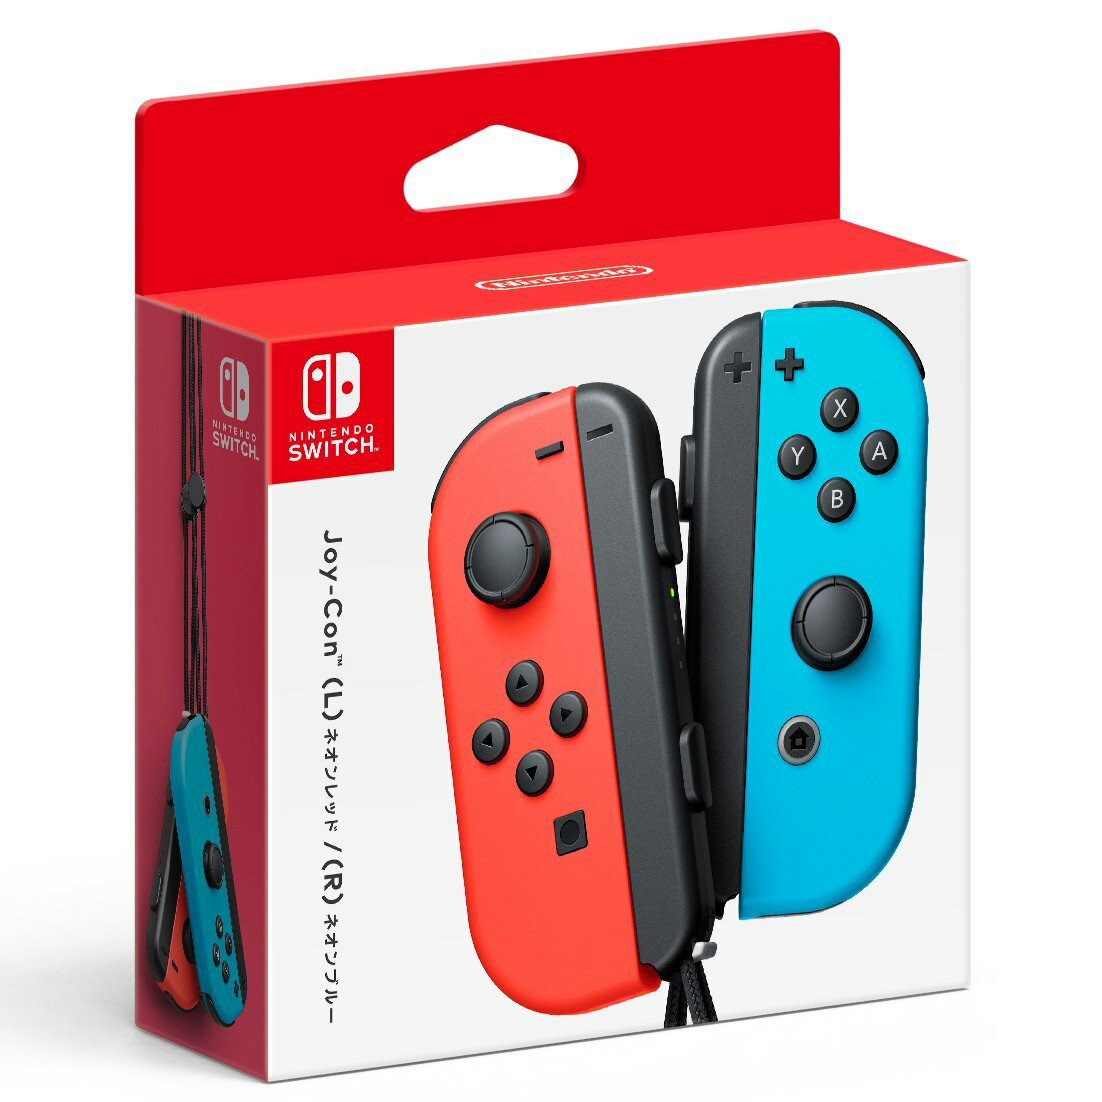 現貨供應中 [普遍級] Nintendo Switch Joy-Con 控制器組(電光紅 / 電光藍)